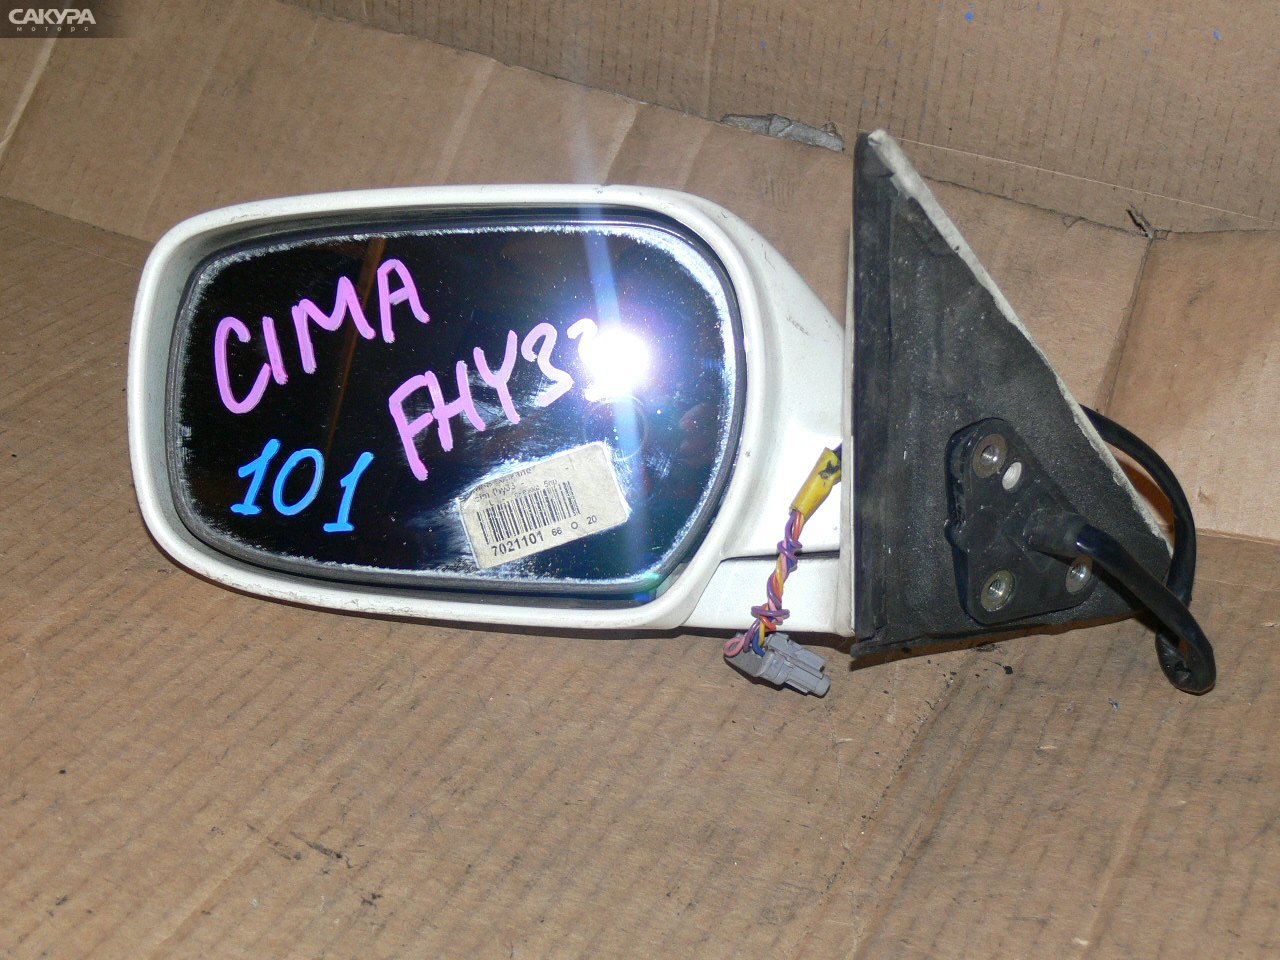 Зеркало боковое левое Nissan Cima FHY33: купить в Сакура Иркутск.